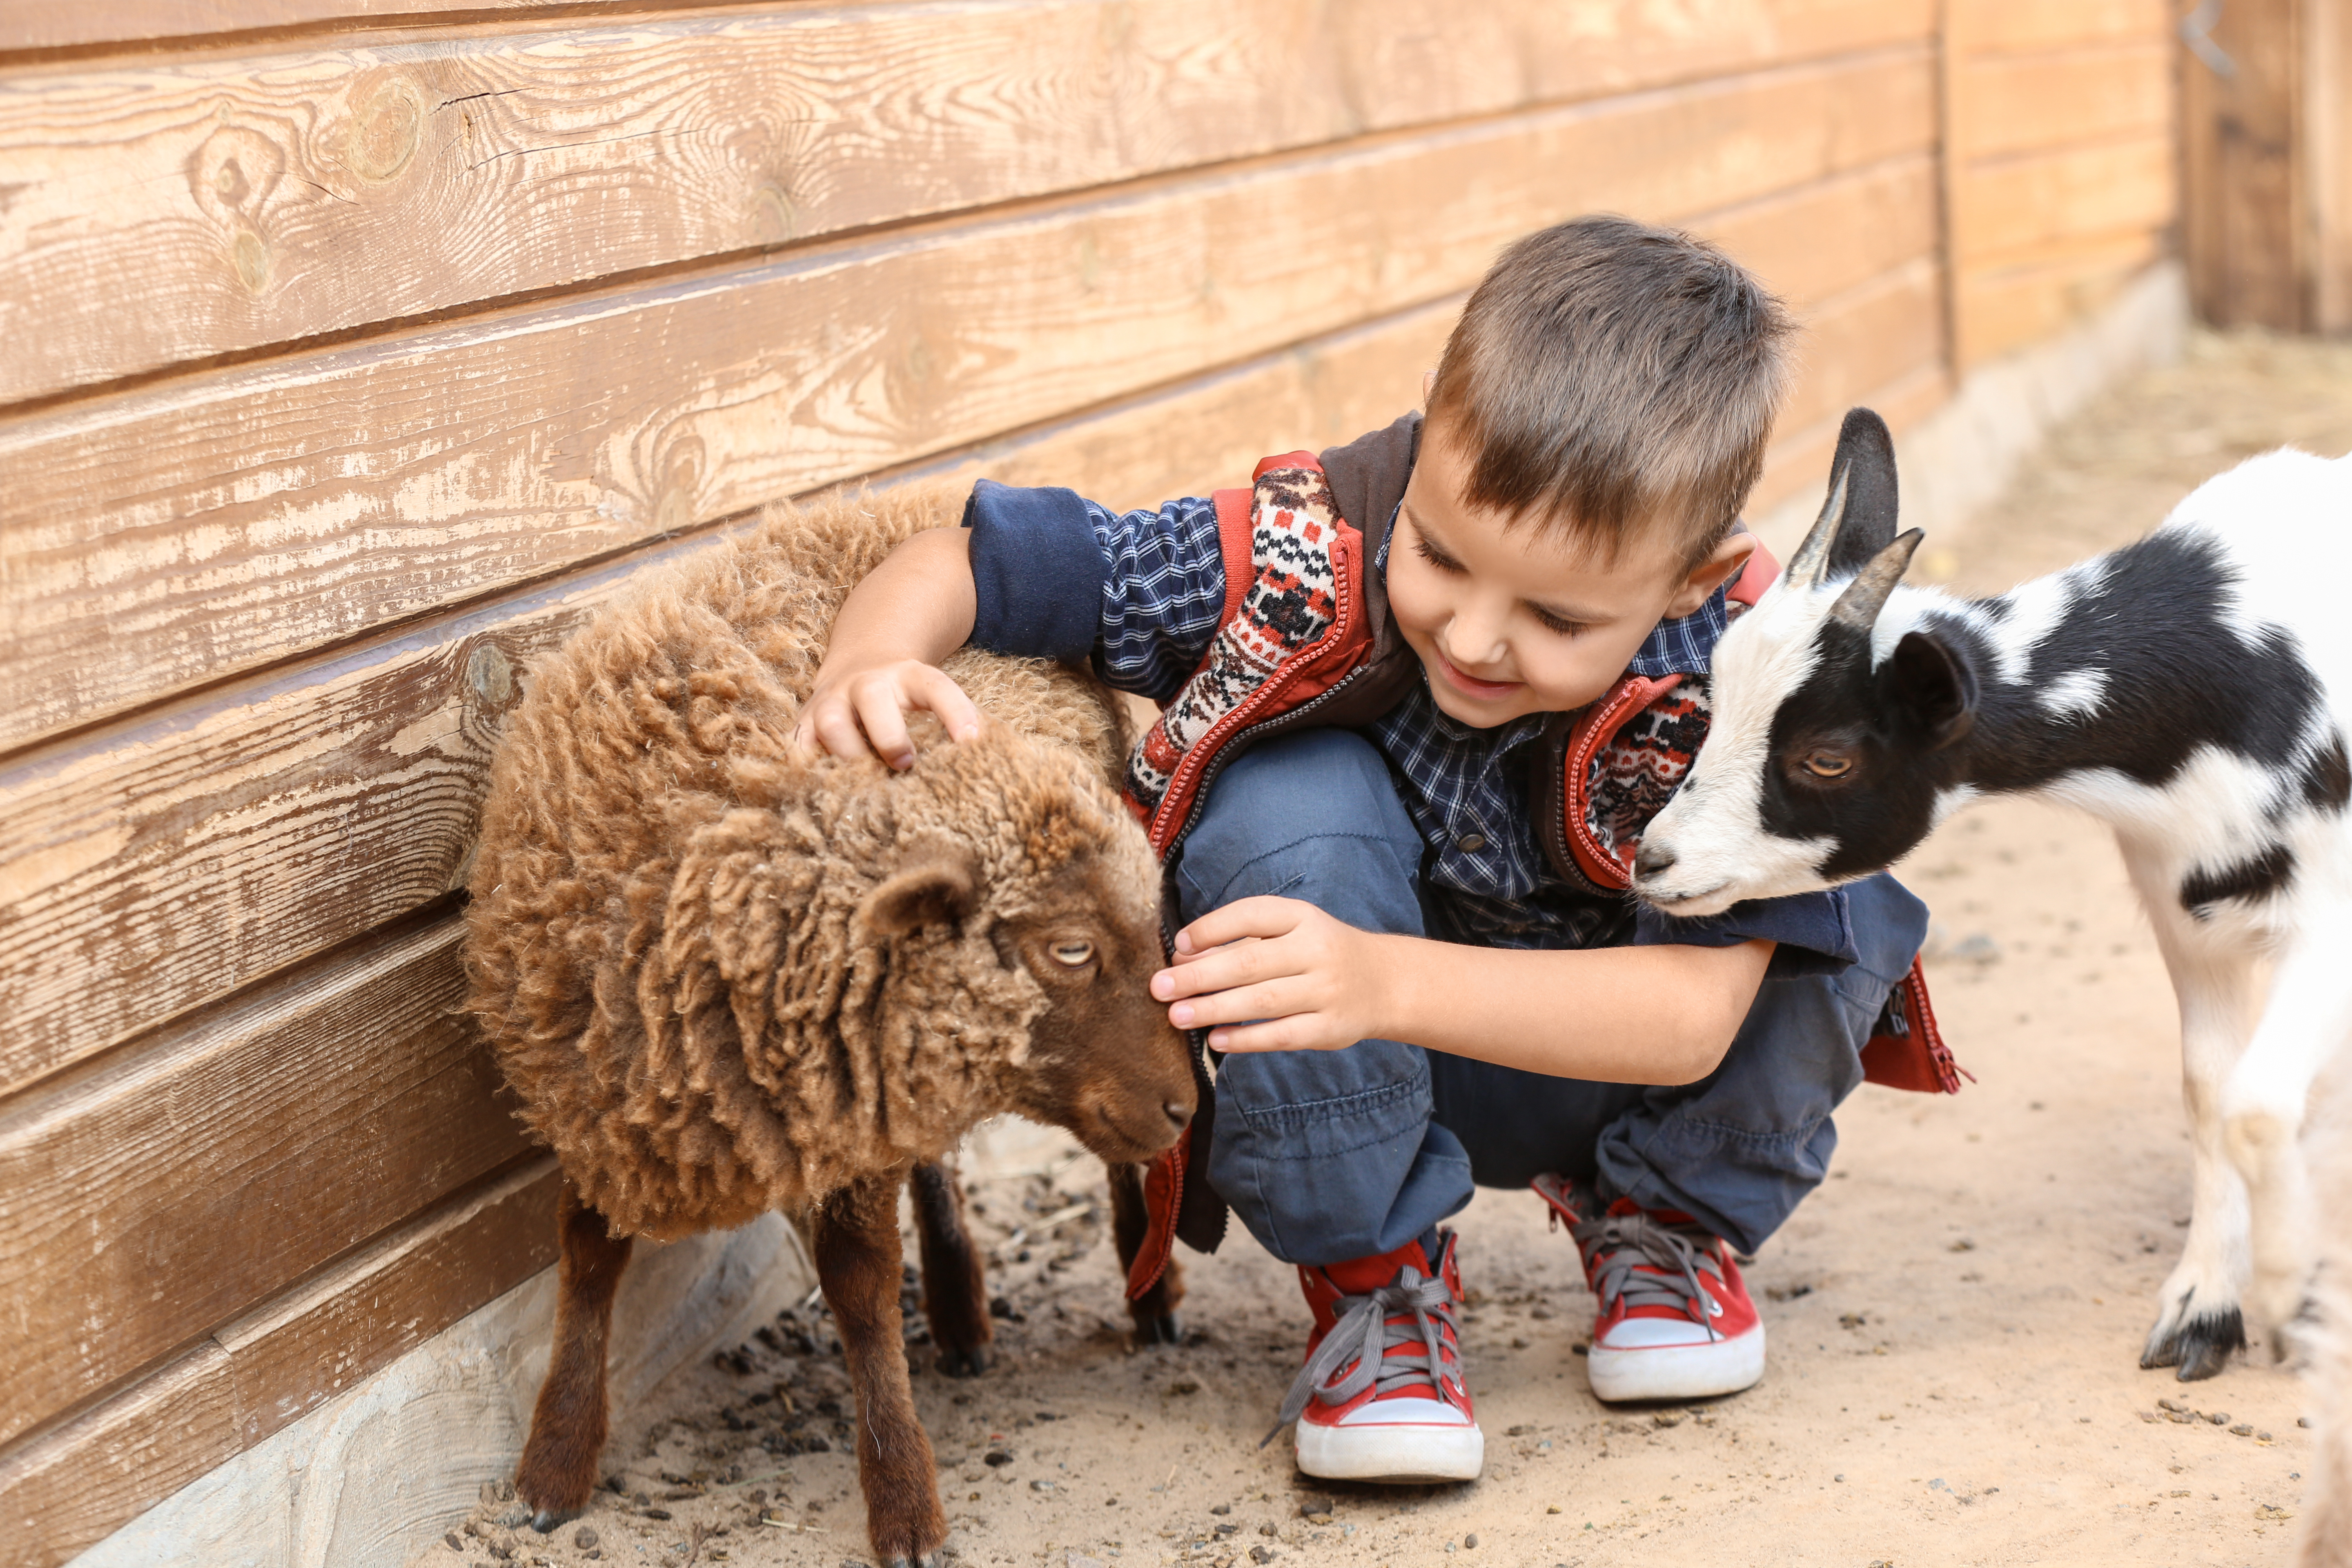 Child petting a sheep